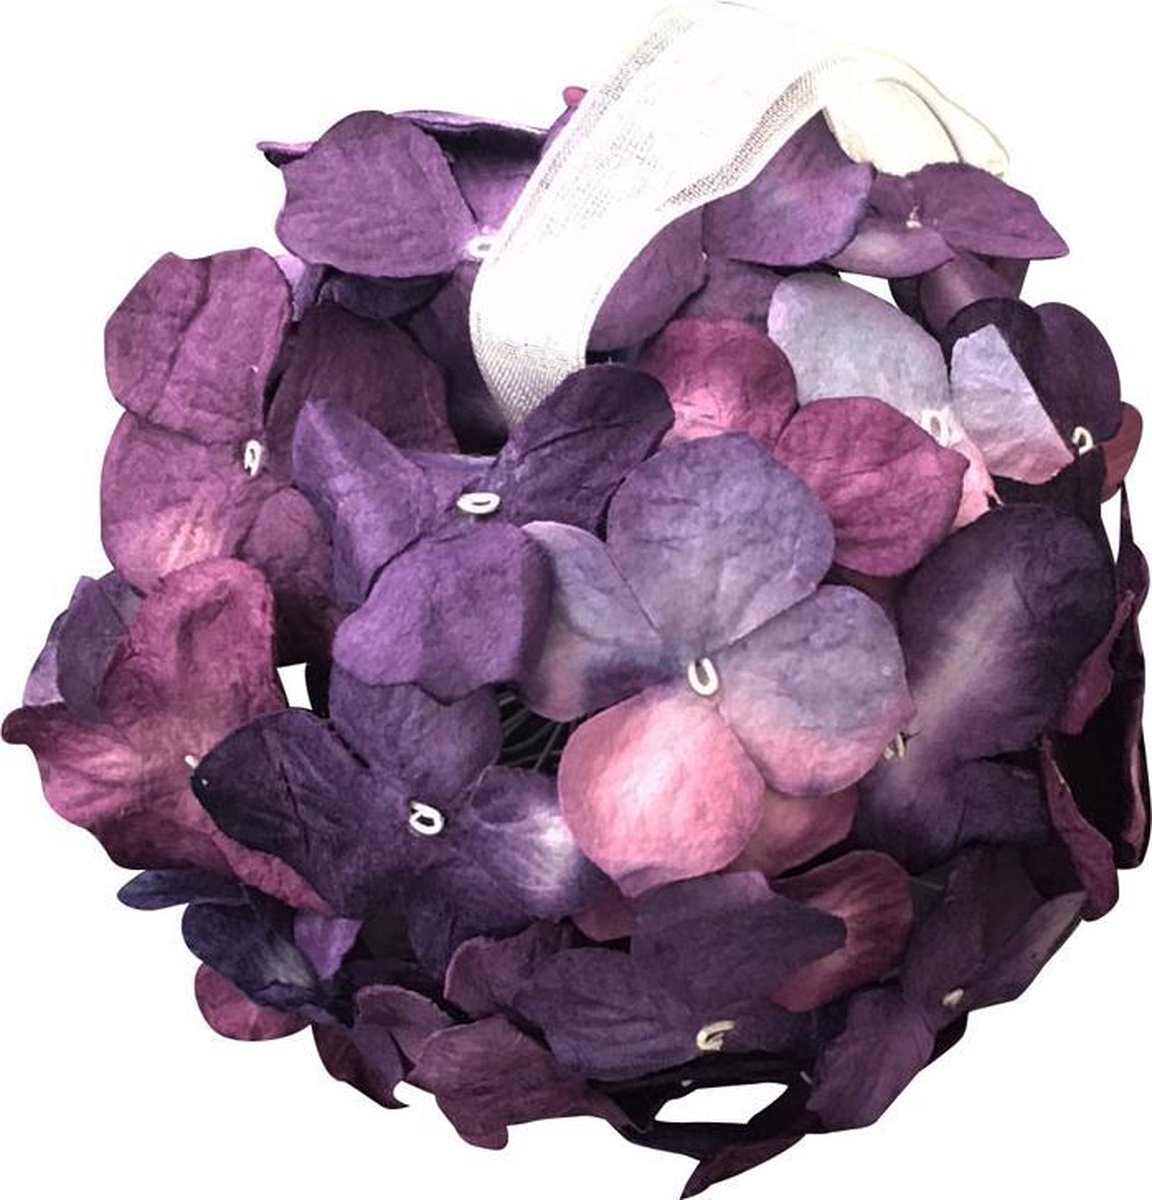 Bloembol van handgeschept mulberry papier, met geur